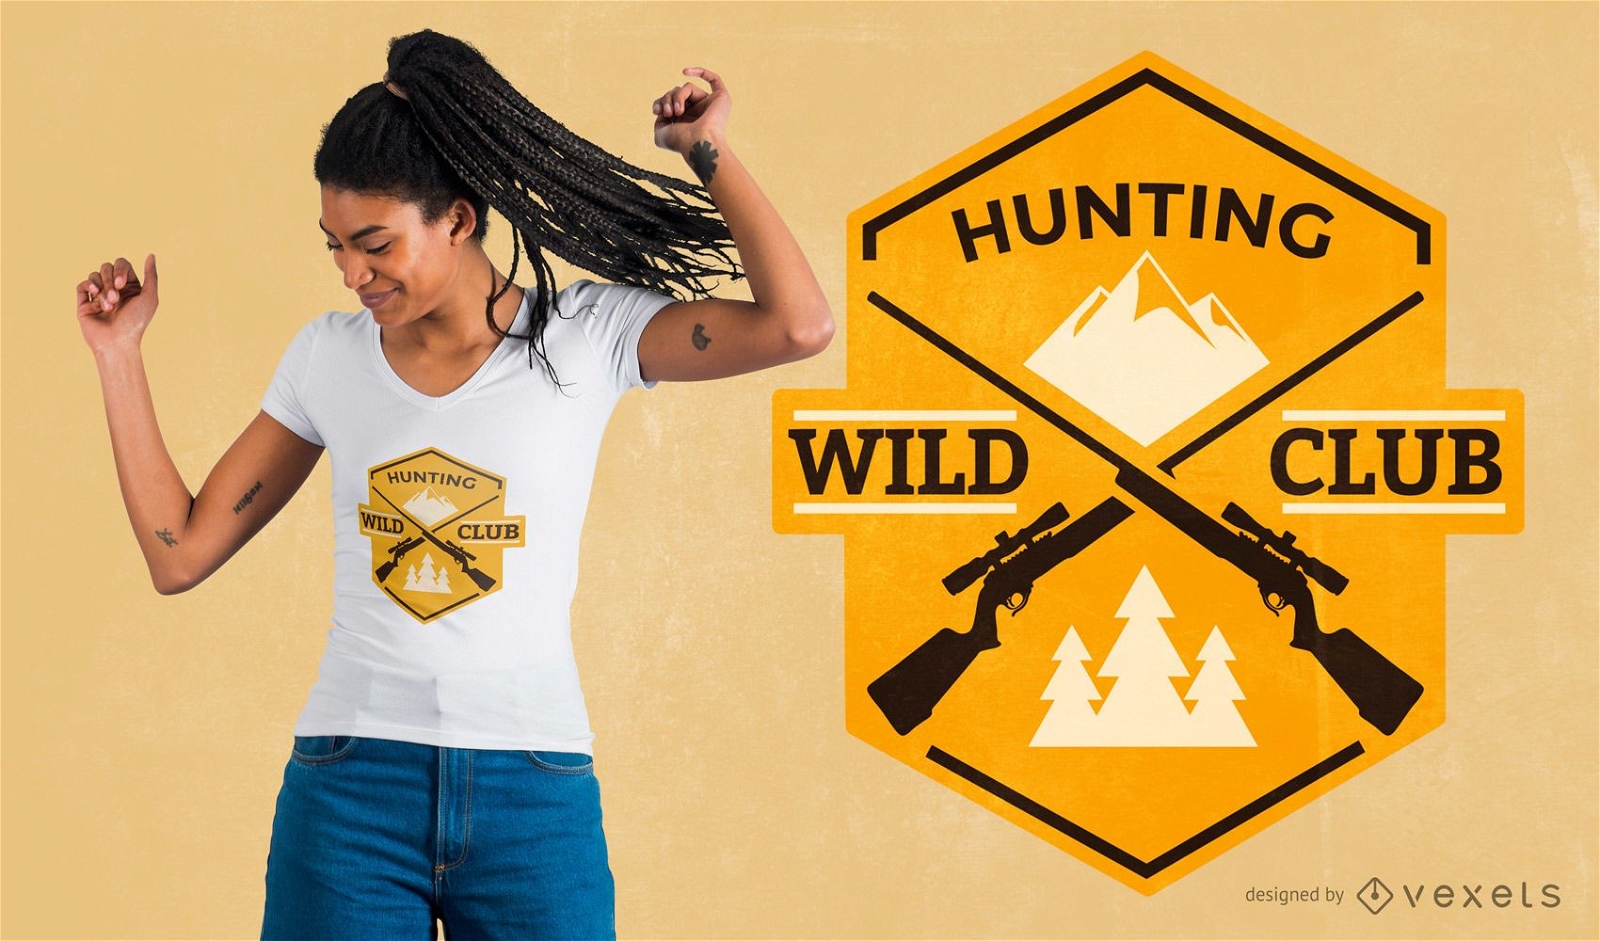 Hunting club t-shirt design